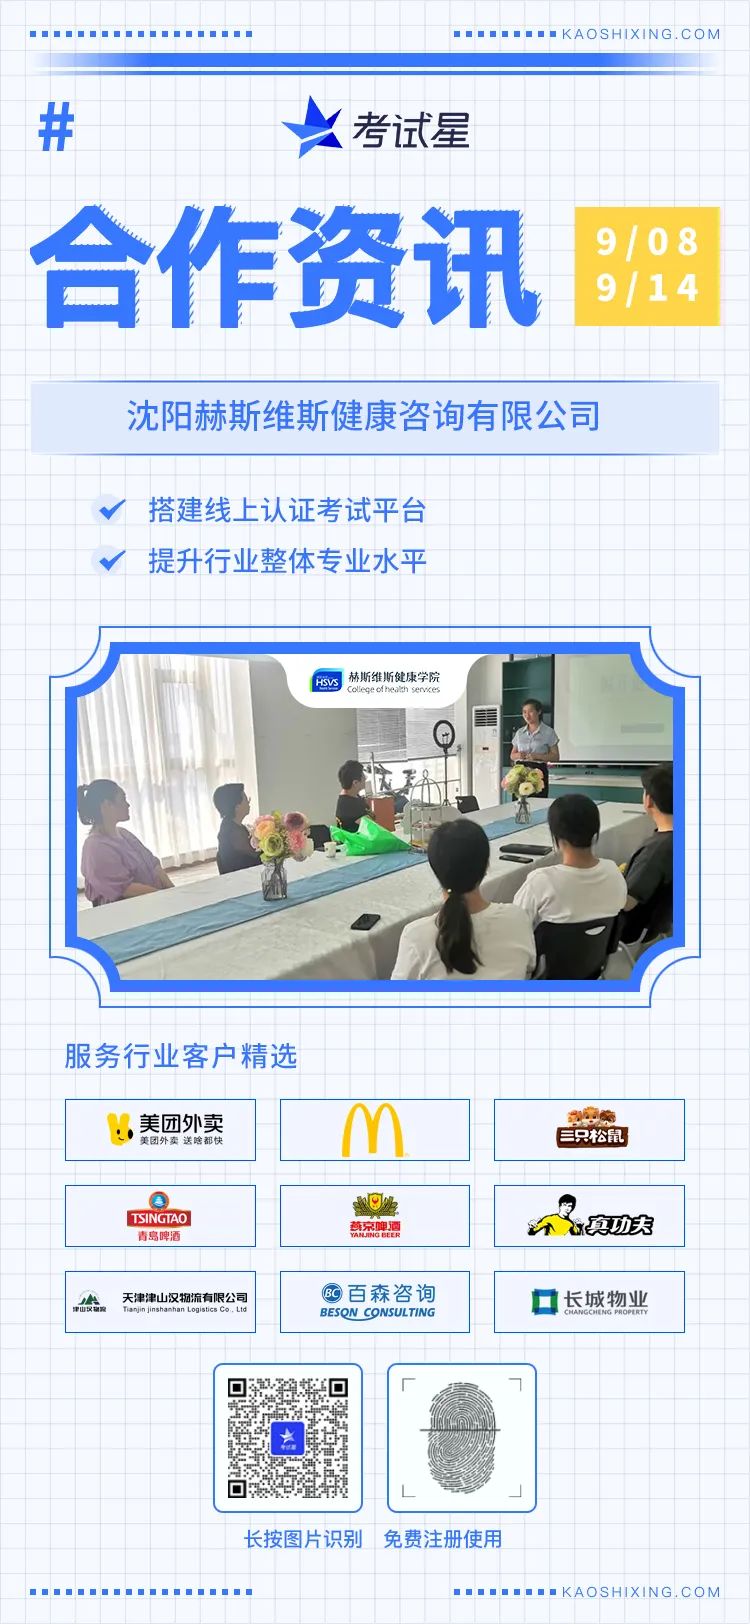 沈阳赫斯维斯健康咨询有限公司-线上认证考试平台